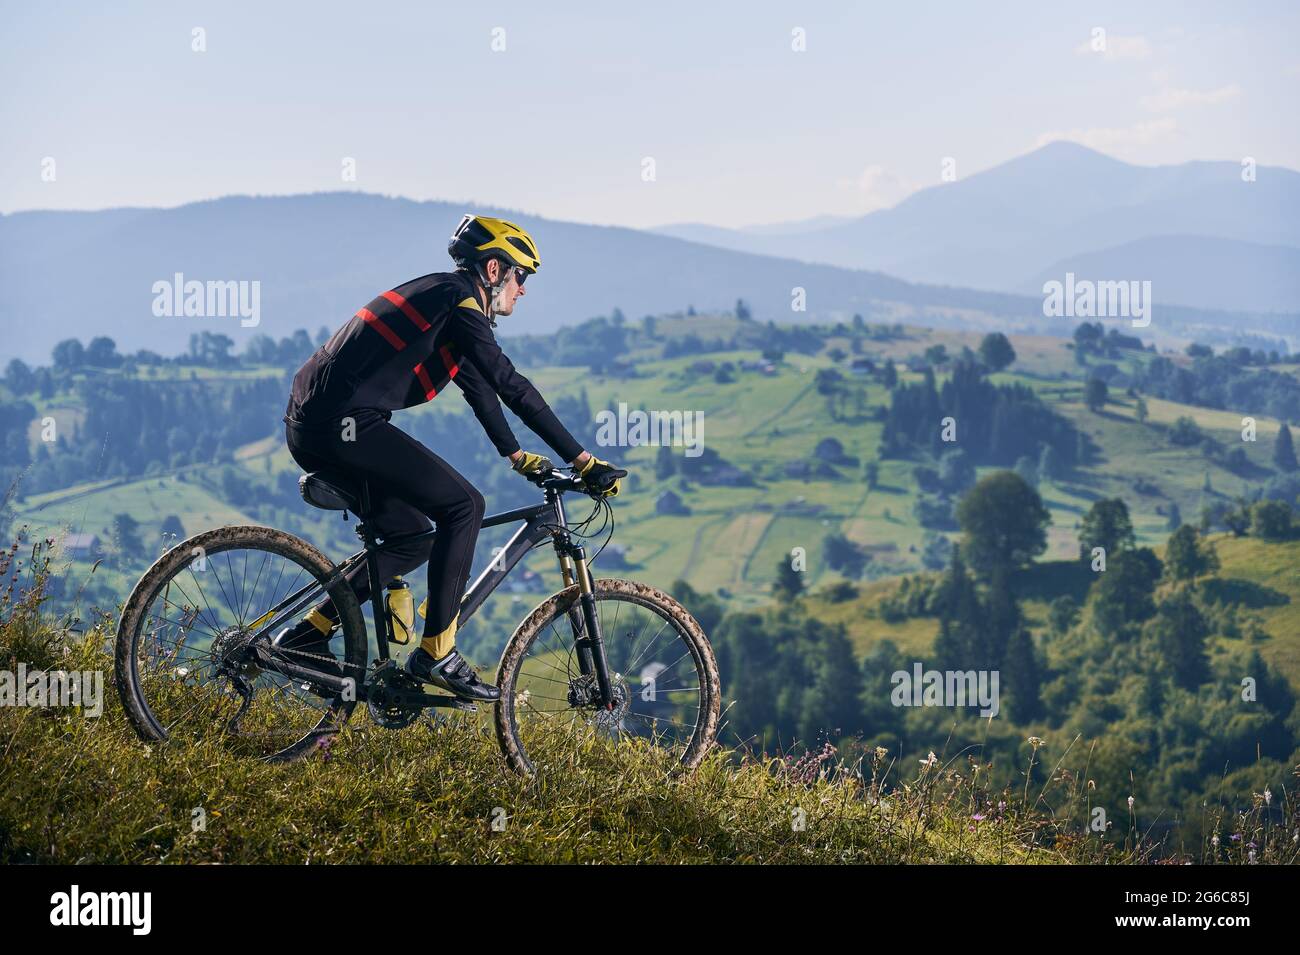 Immagine orizzontale dell'uomo che guida la sua bicicletta in montagna in mattinata in salita. Picchi nelle nuvole, verdi colline sullo sfondo. Vista laterale, spazio di copia. Concetto di stile di vita attivo Foto Stock